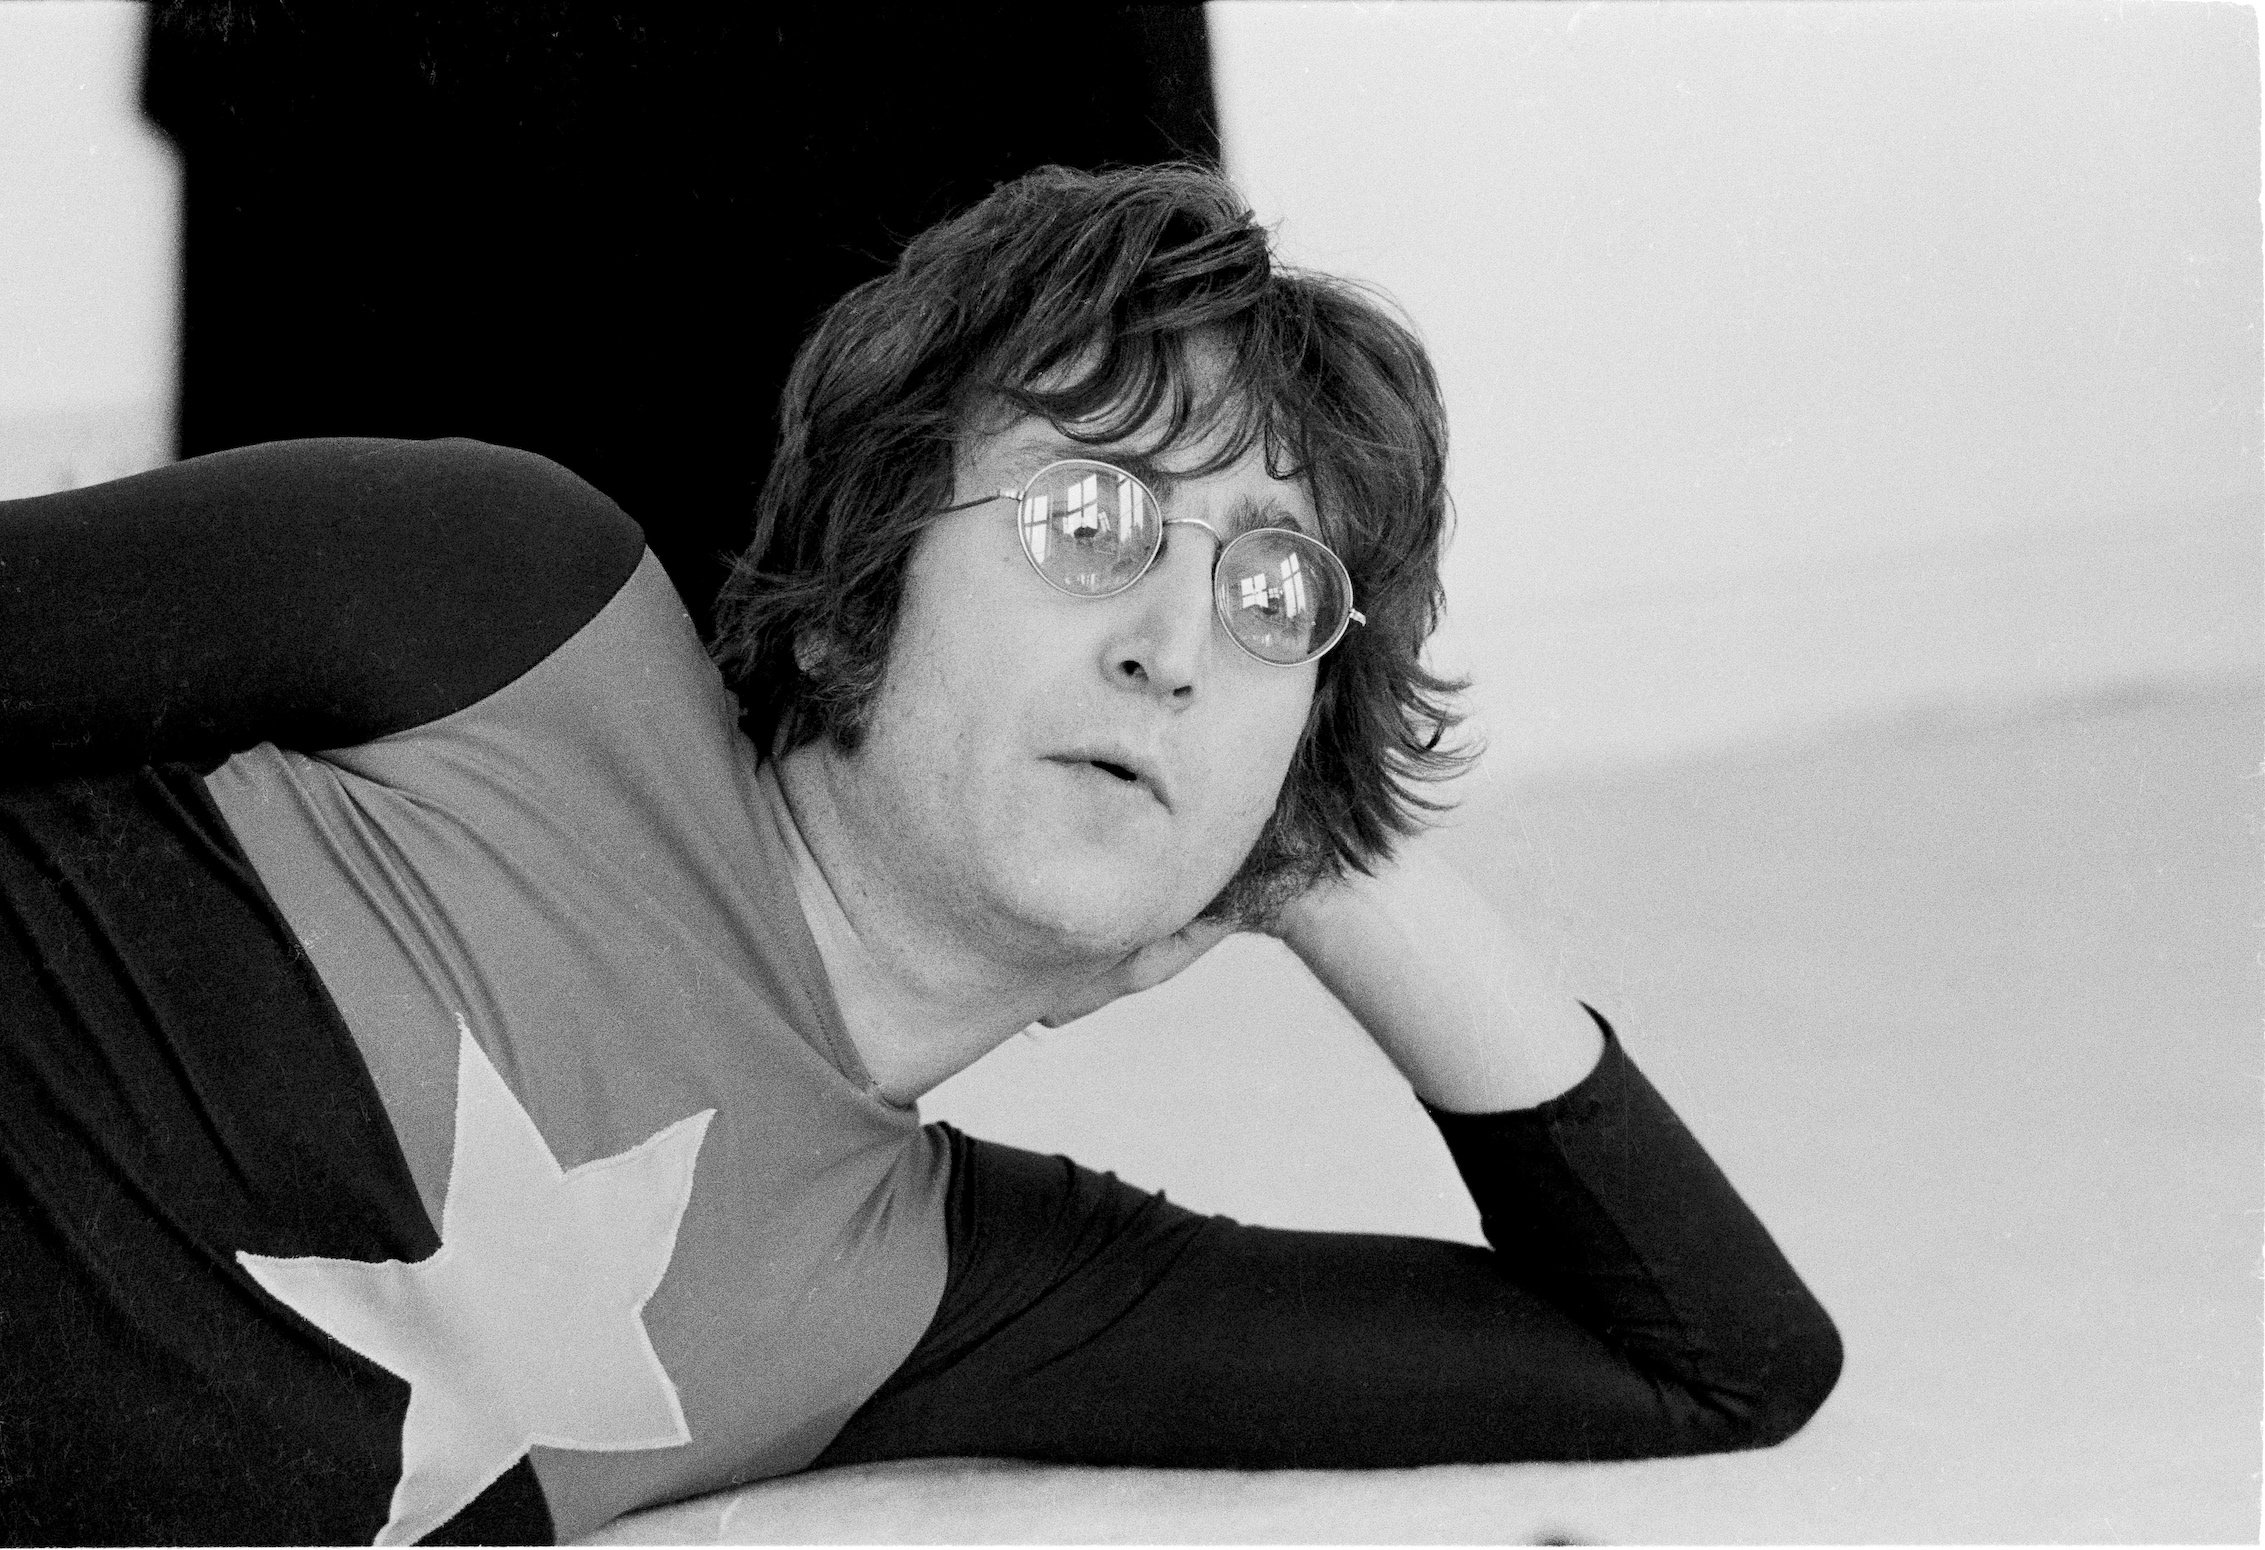 John Lennon at his home in Tittenhurst Park